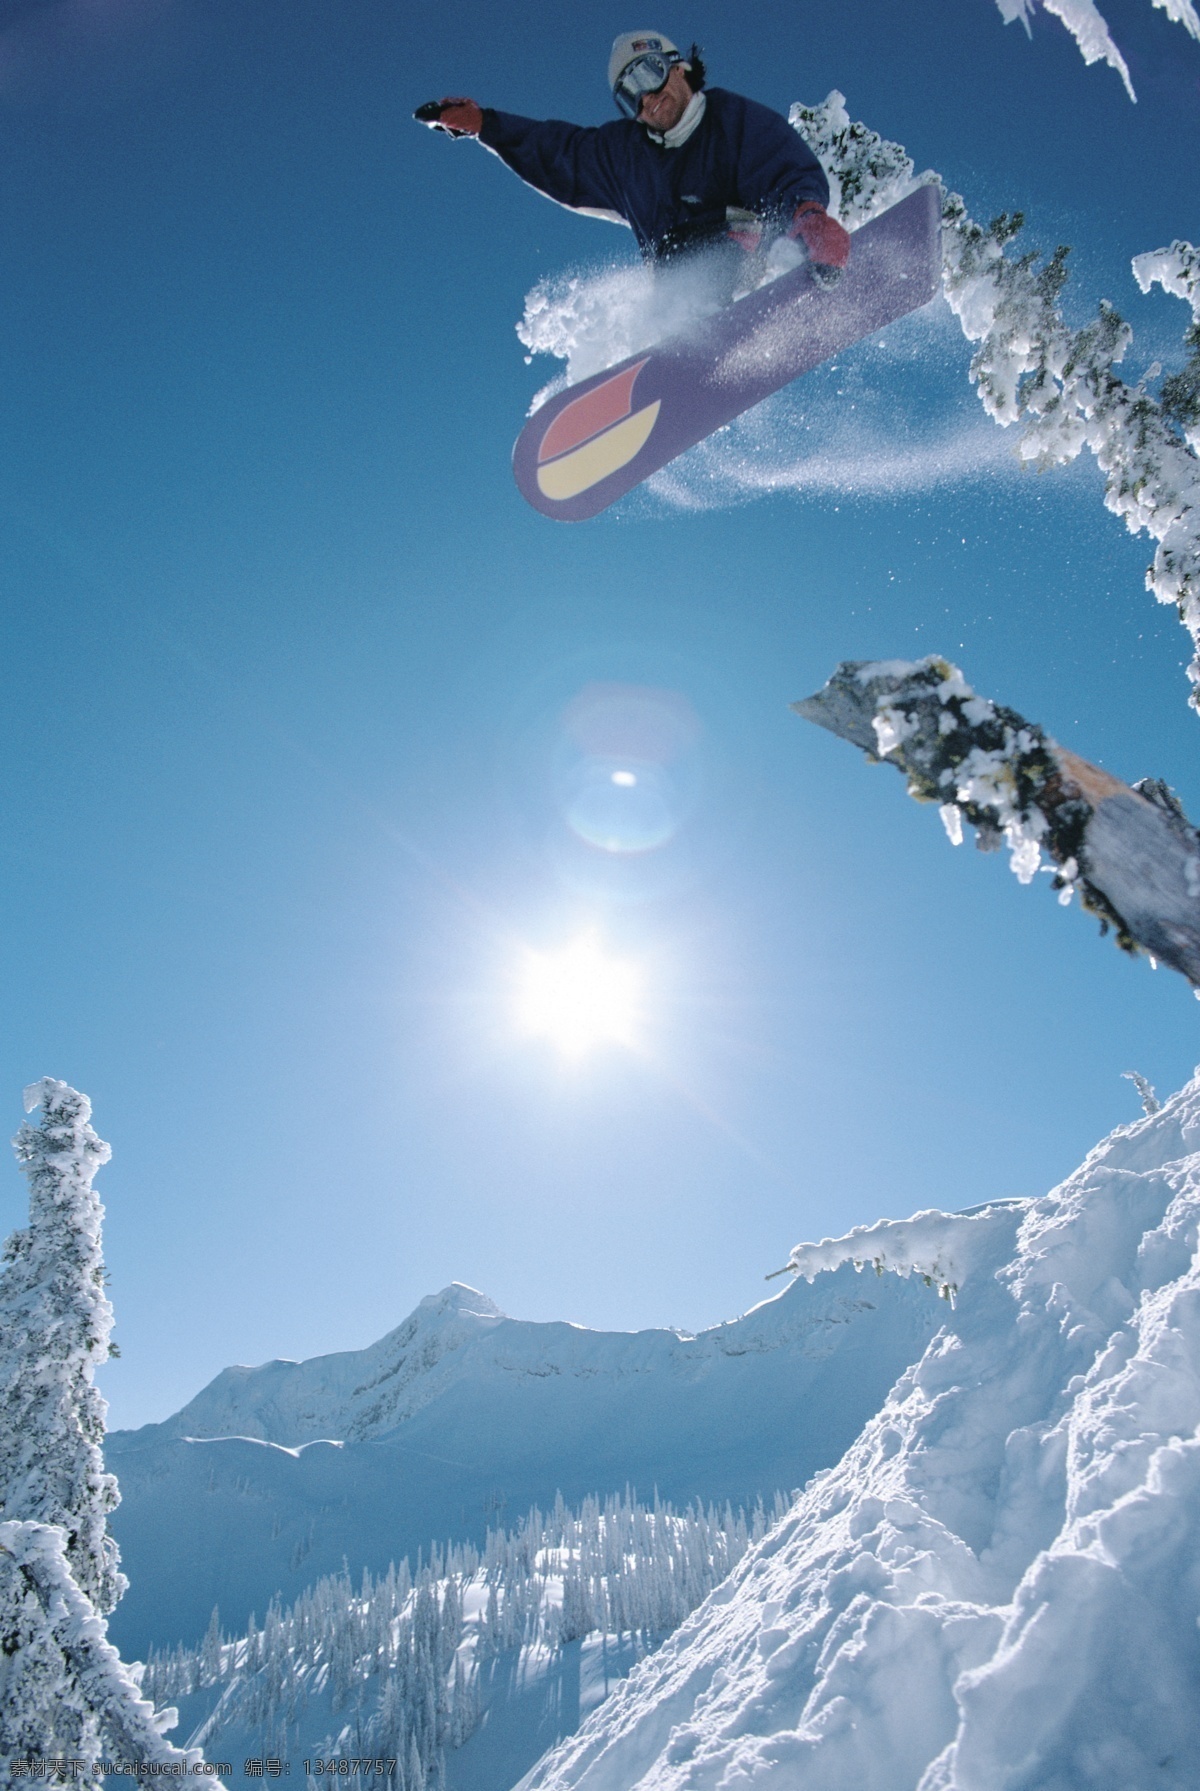 滑雪 运动员 高清 雪地运动 划雪运动 极限运动 体育项目 腾空 飞跃 下滑 速度 运动图片 生活百科 雪山 风景 摄影图片 高清图片 体育运动 蓝色